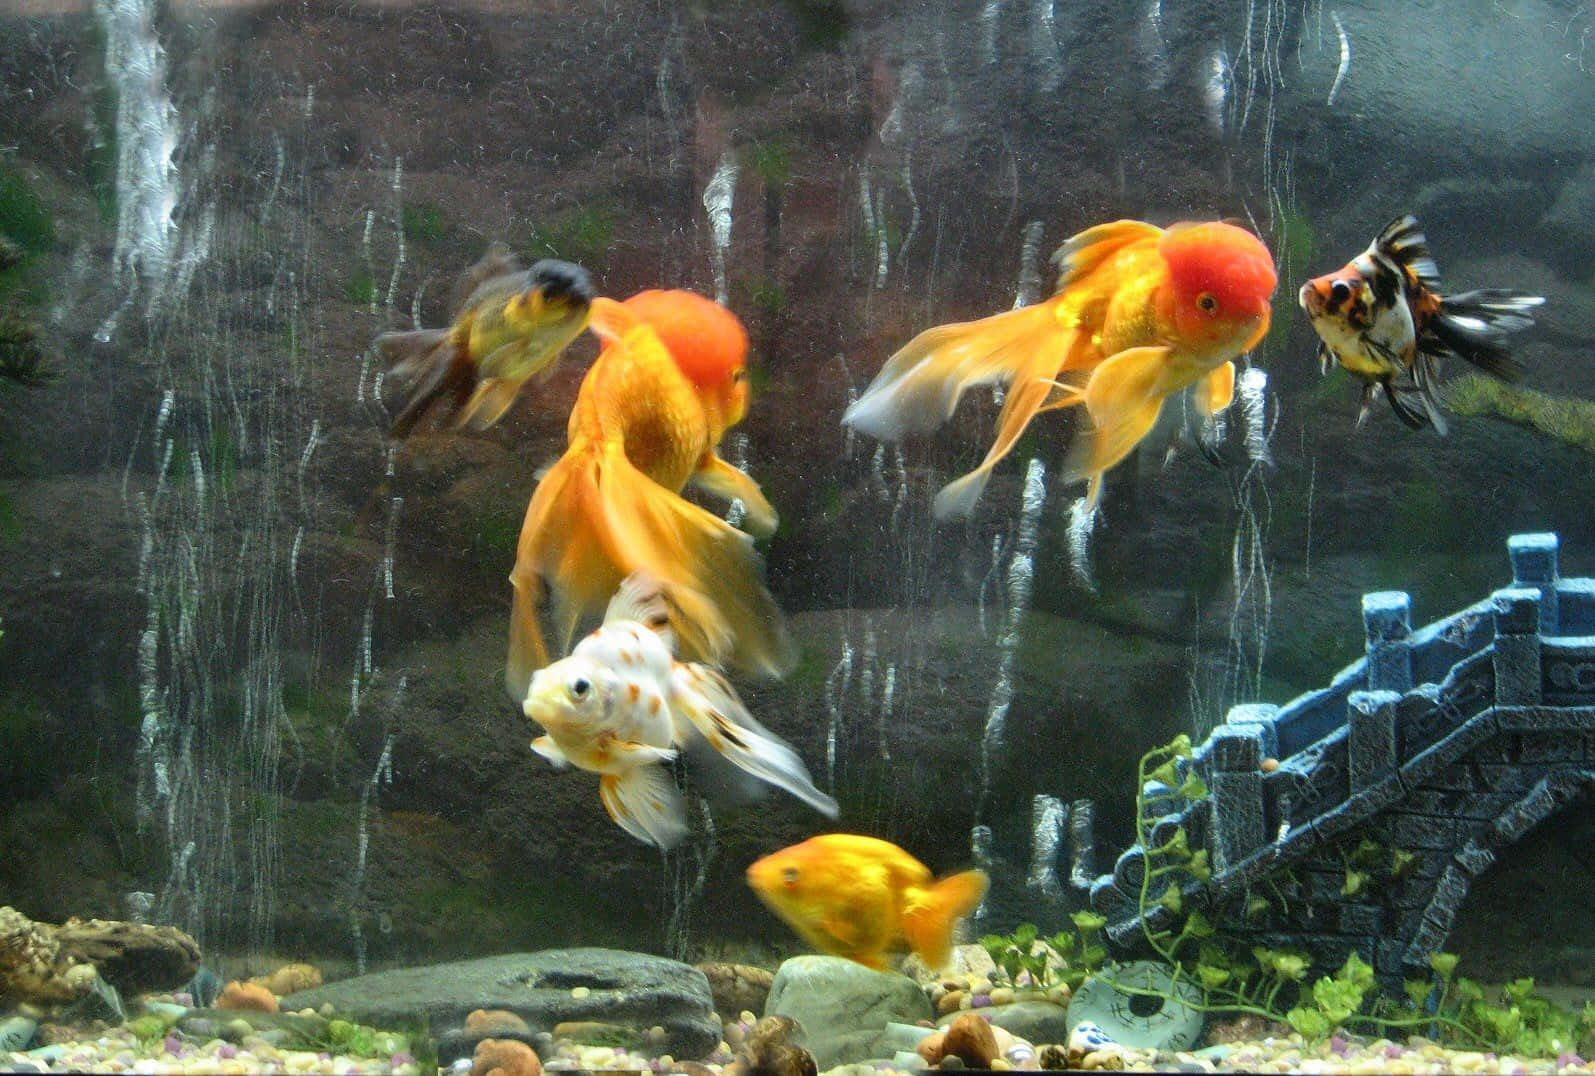 Especiesde Peces Goldfish Para Fondo De Peceras.